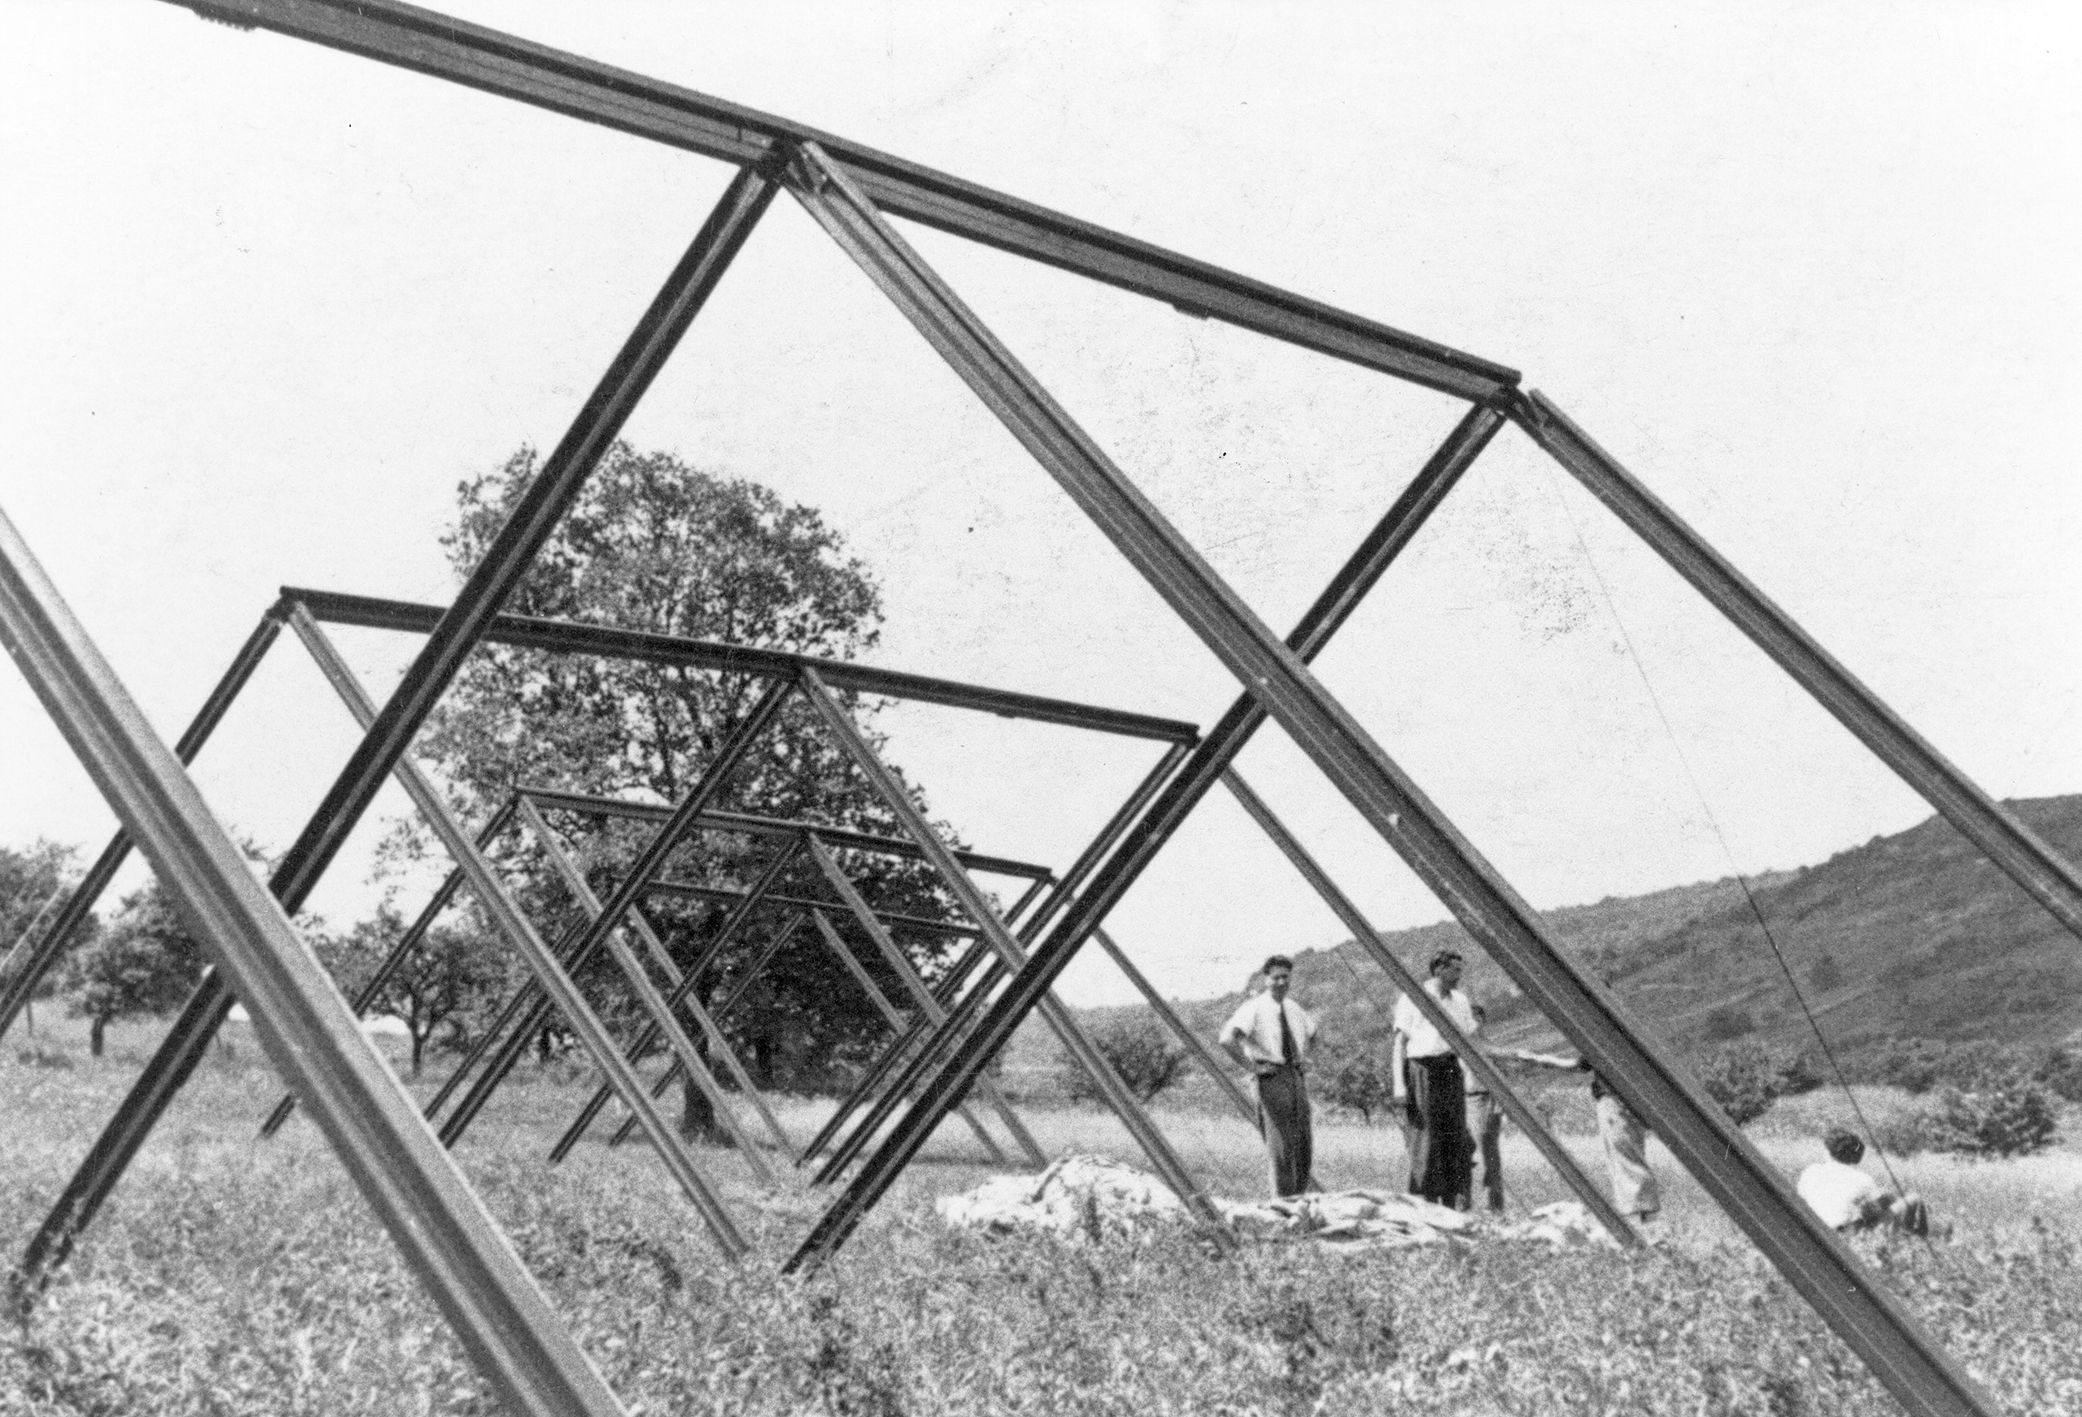 Tente, ossature extérieure métallique. Camp de vacances, Onville, 1939.